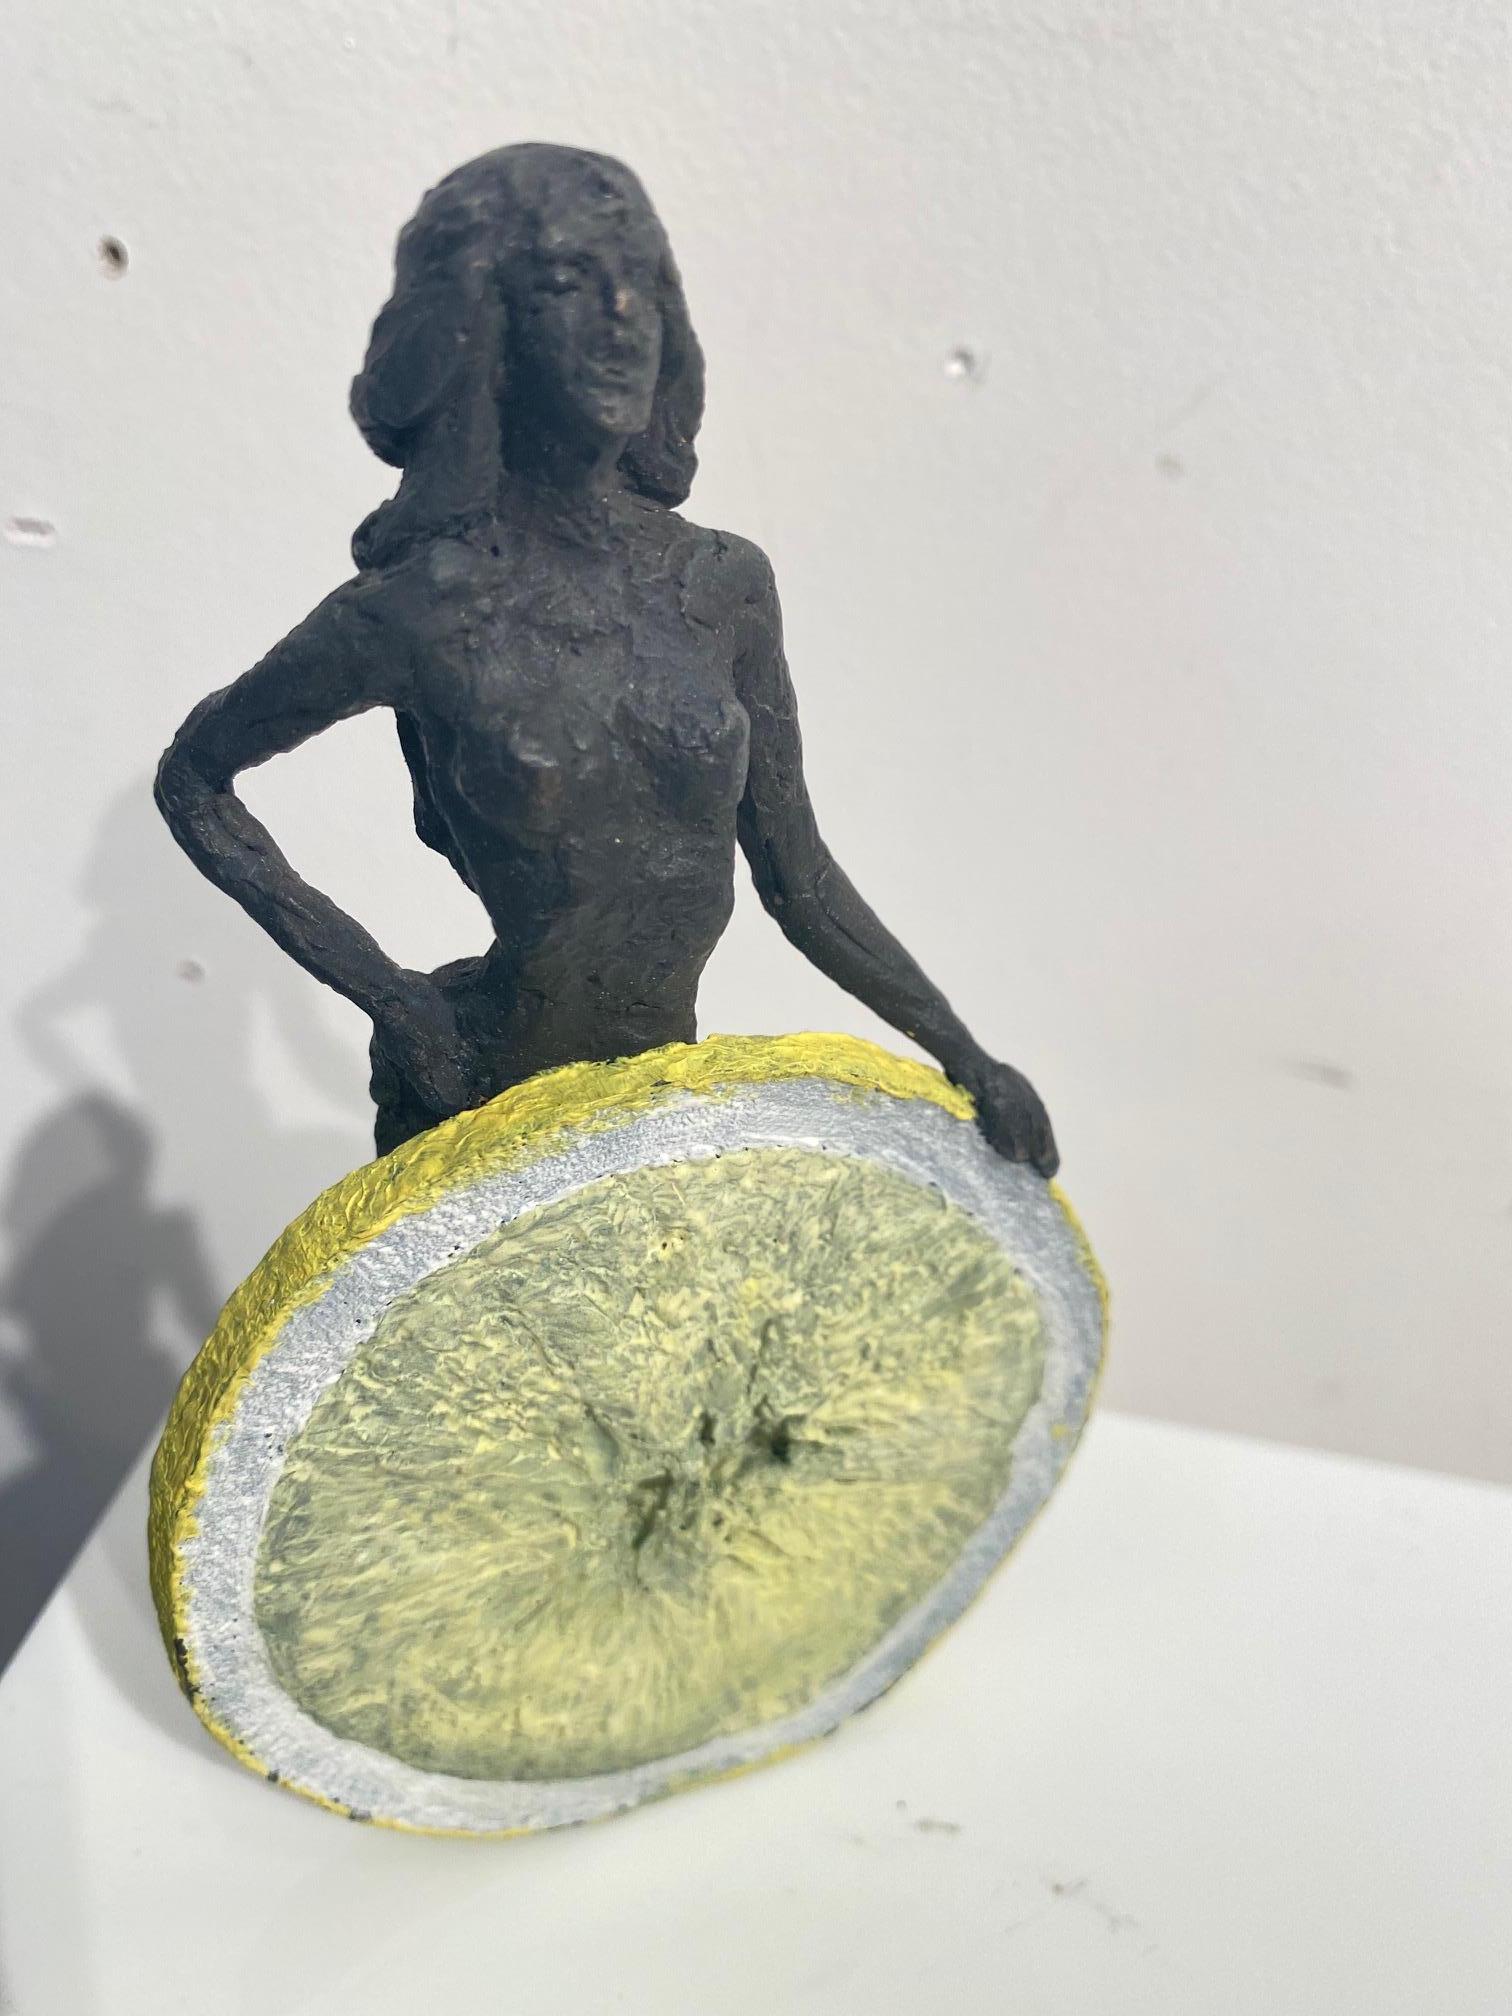 "The Beautiful Sparkle" est une petite sculpture en bronze autoportante représentant une femme nue debout derrière un citron jaune. Edition 18, signée, numérotée et datée sur le bas. 

La sculptrice Susanne Kraisser doit être considérée comme